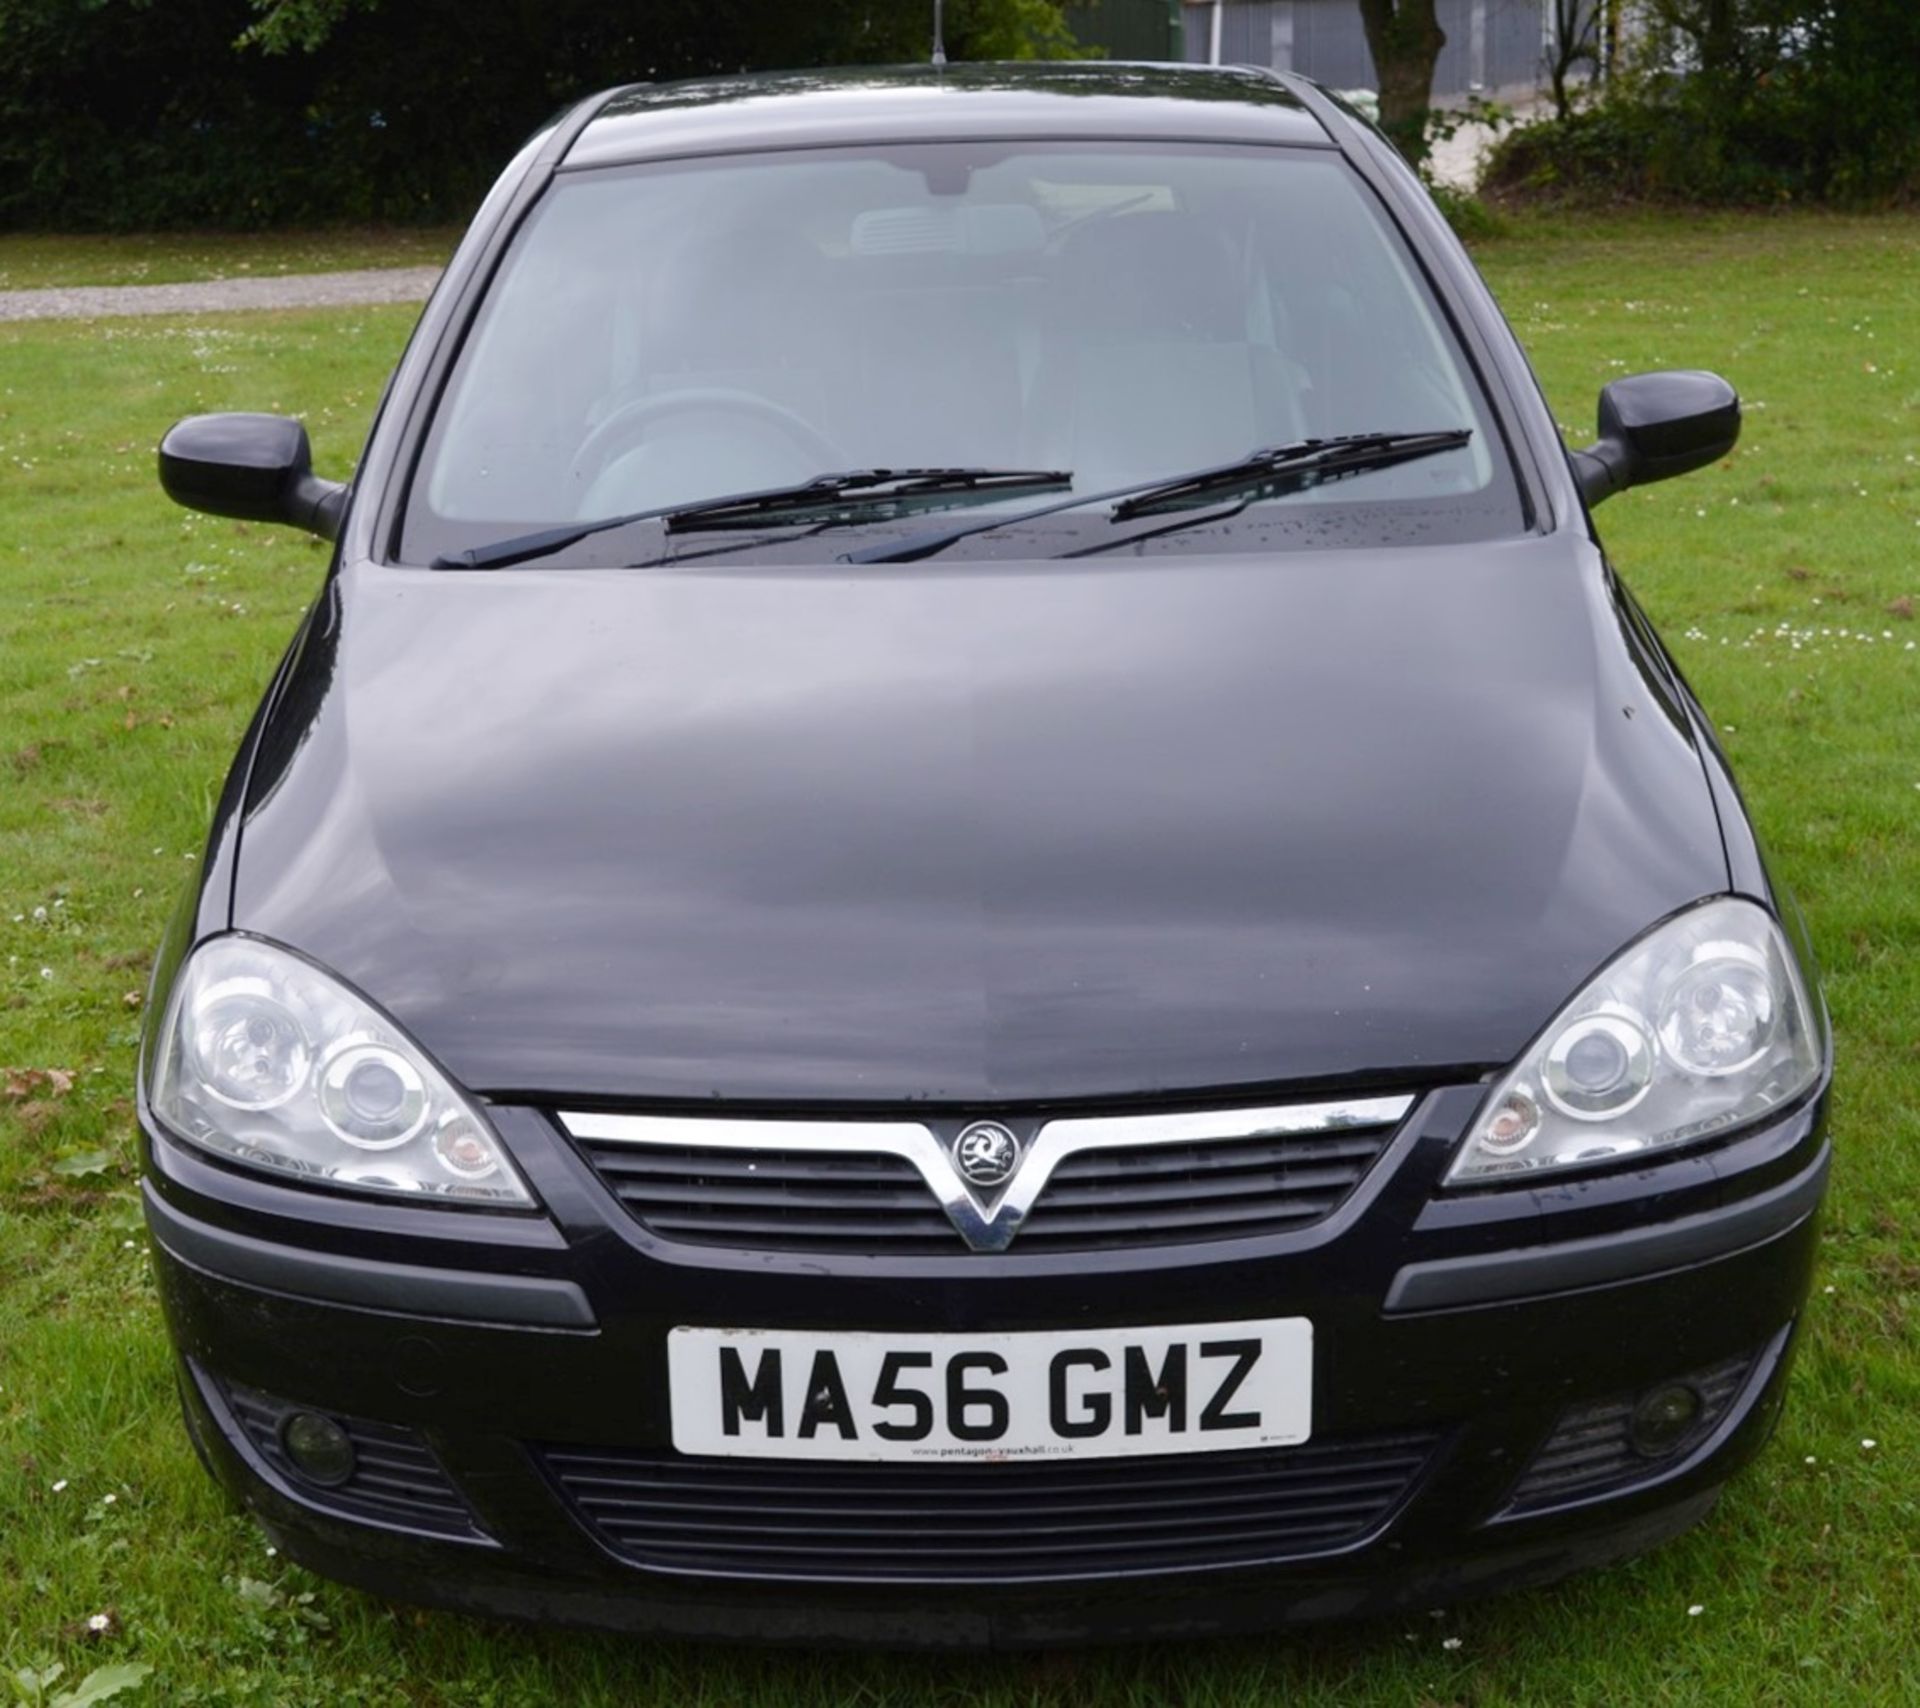 1 x Vauxhall Corsa SXI+ 3 Door Hatchback 1.2 - 2006 56 Plate - 78,000 Miles - MOT June 2018 - Image 11 of 36